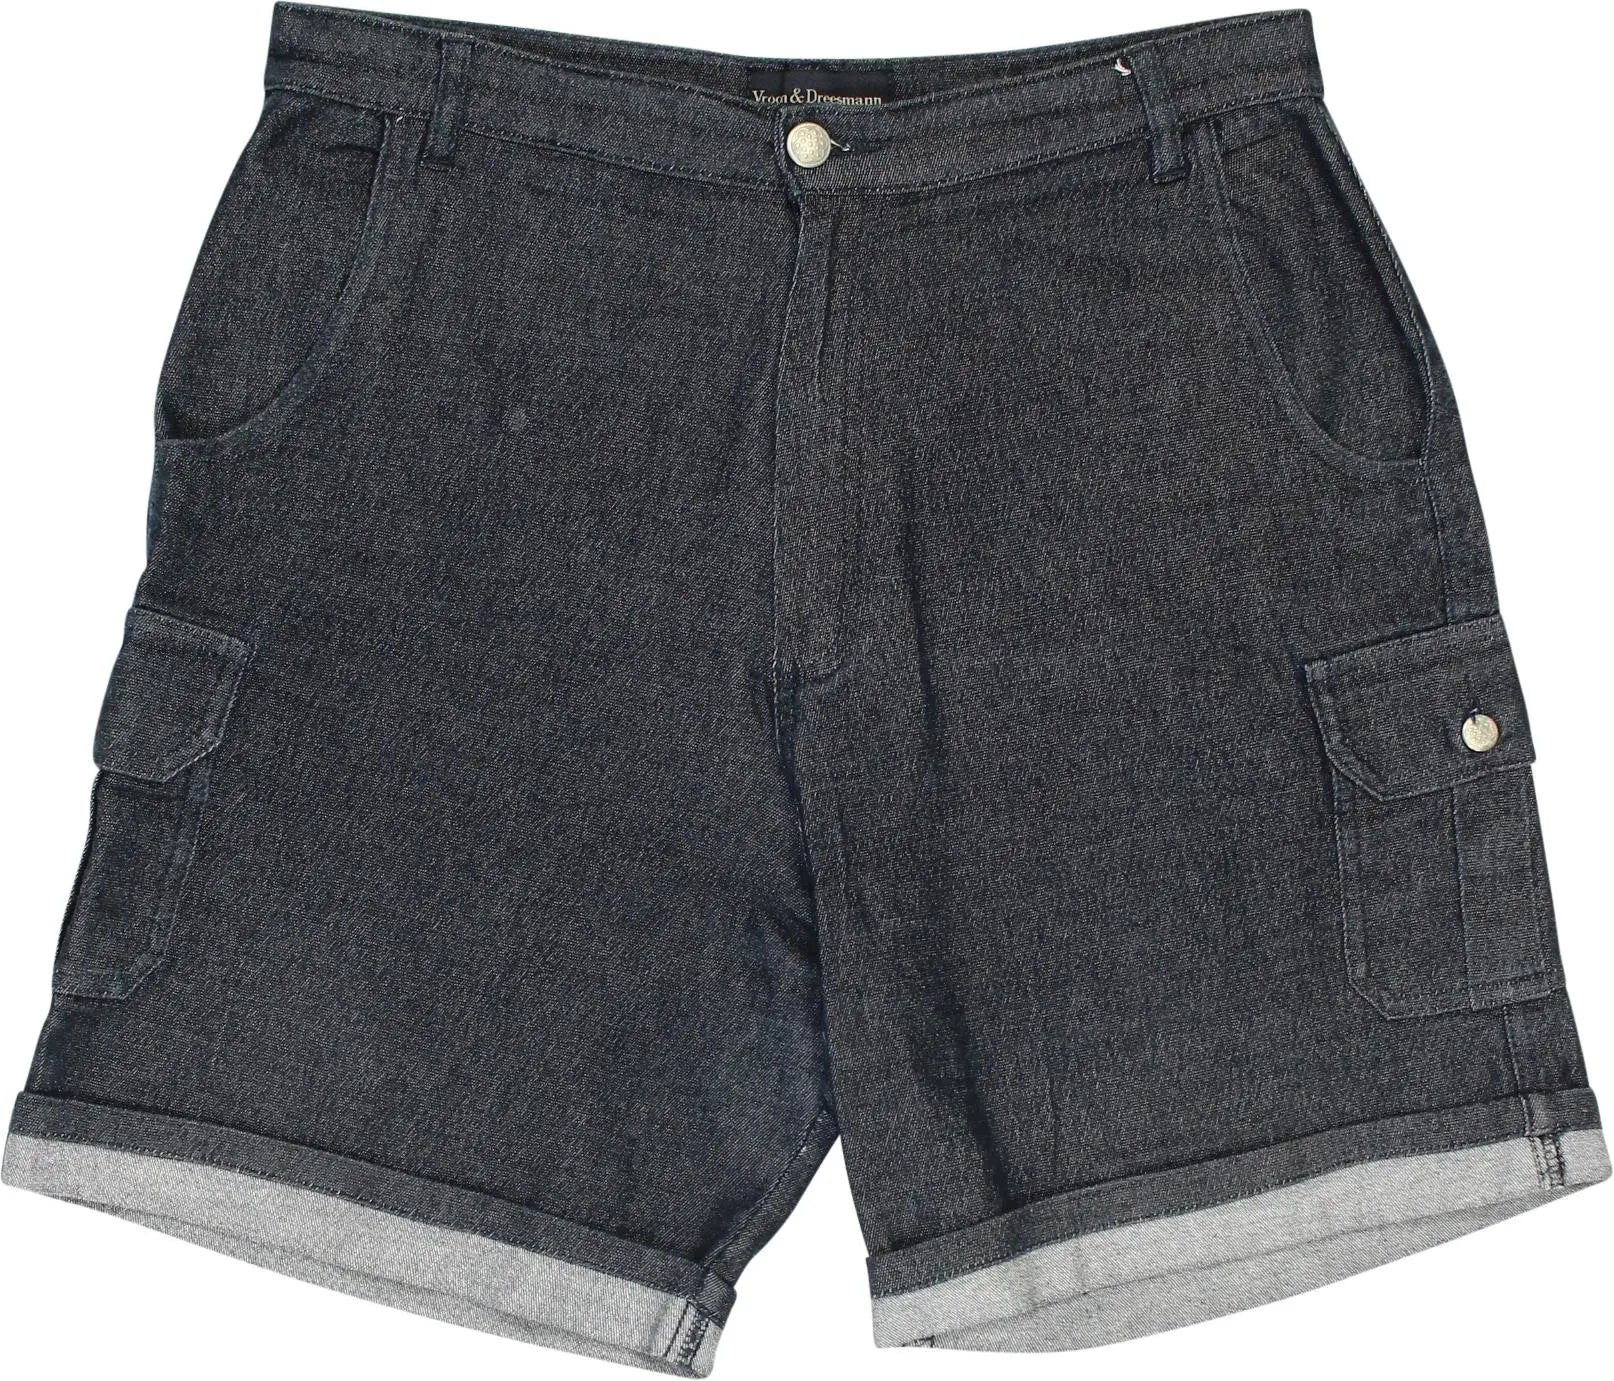 V&D - Denim Shorts- ThriftTale.com - Vintage and second handclothing